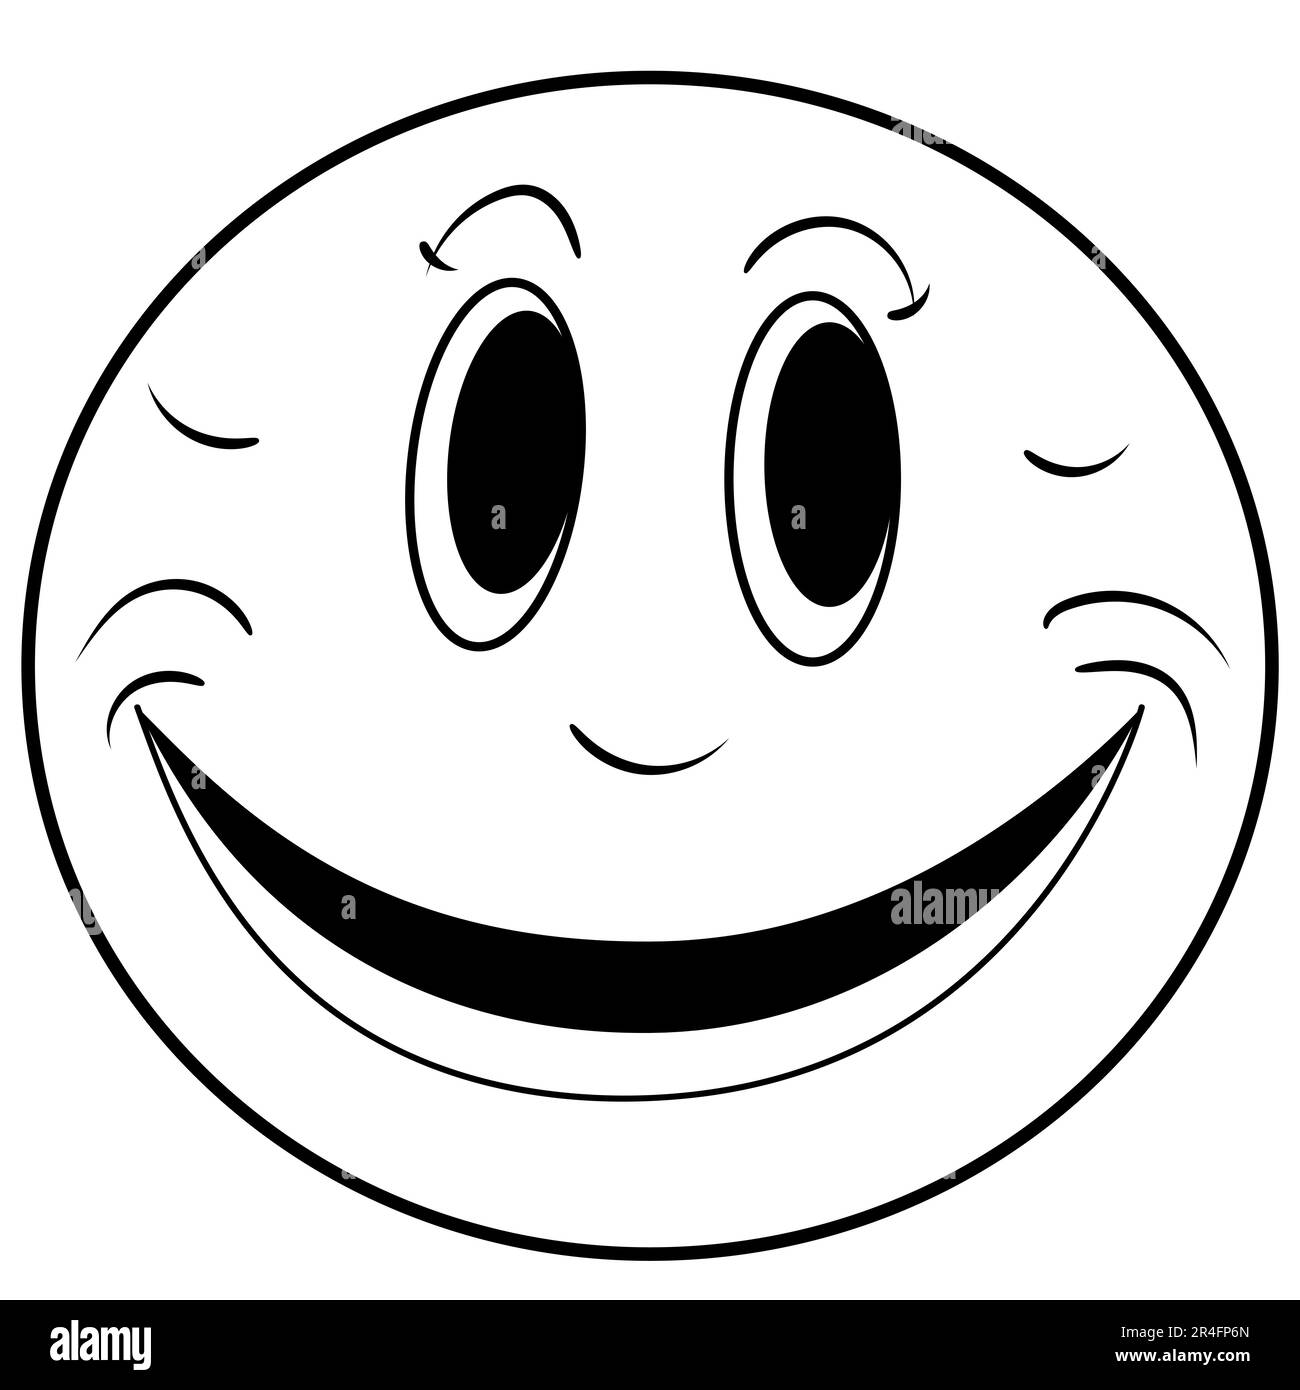 Eine Reihe von Emoji-Doodle-Ikonen, die verschiedene Emotionen und Stimmungen darstellen, wie Glück, Traurigkeit, Lächeln und Humor, In Form von Emoji-Gesichtern Stockfoto